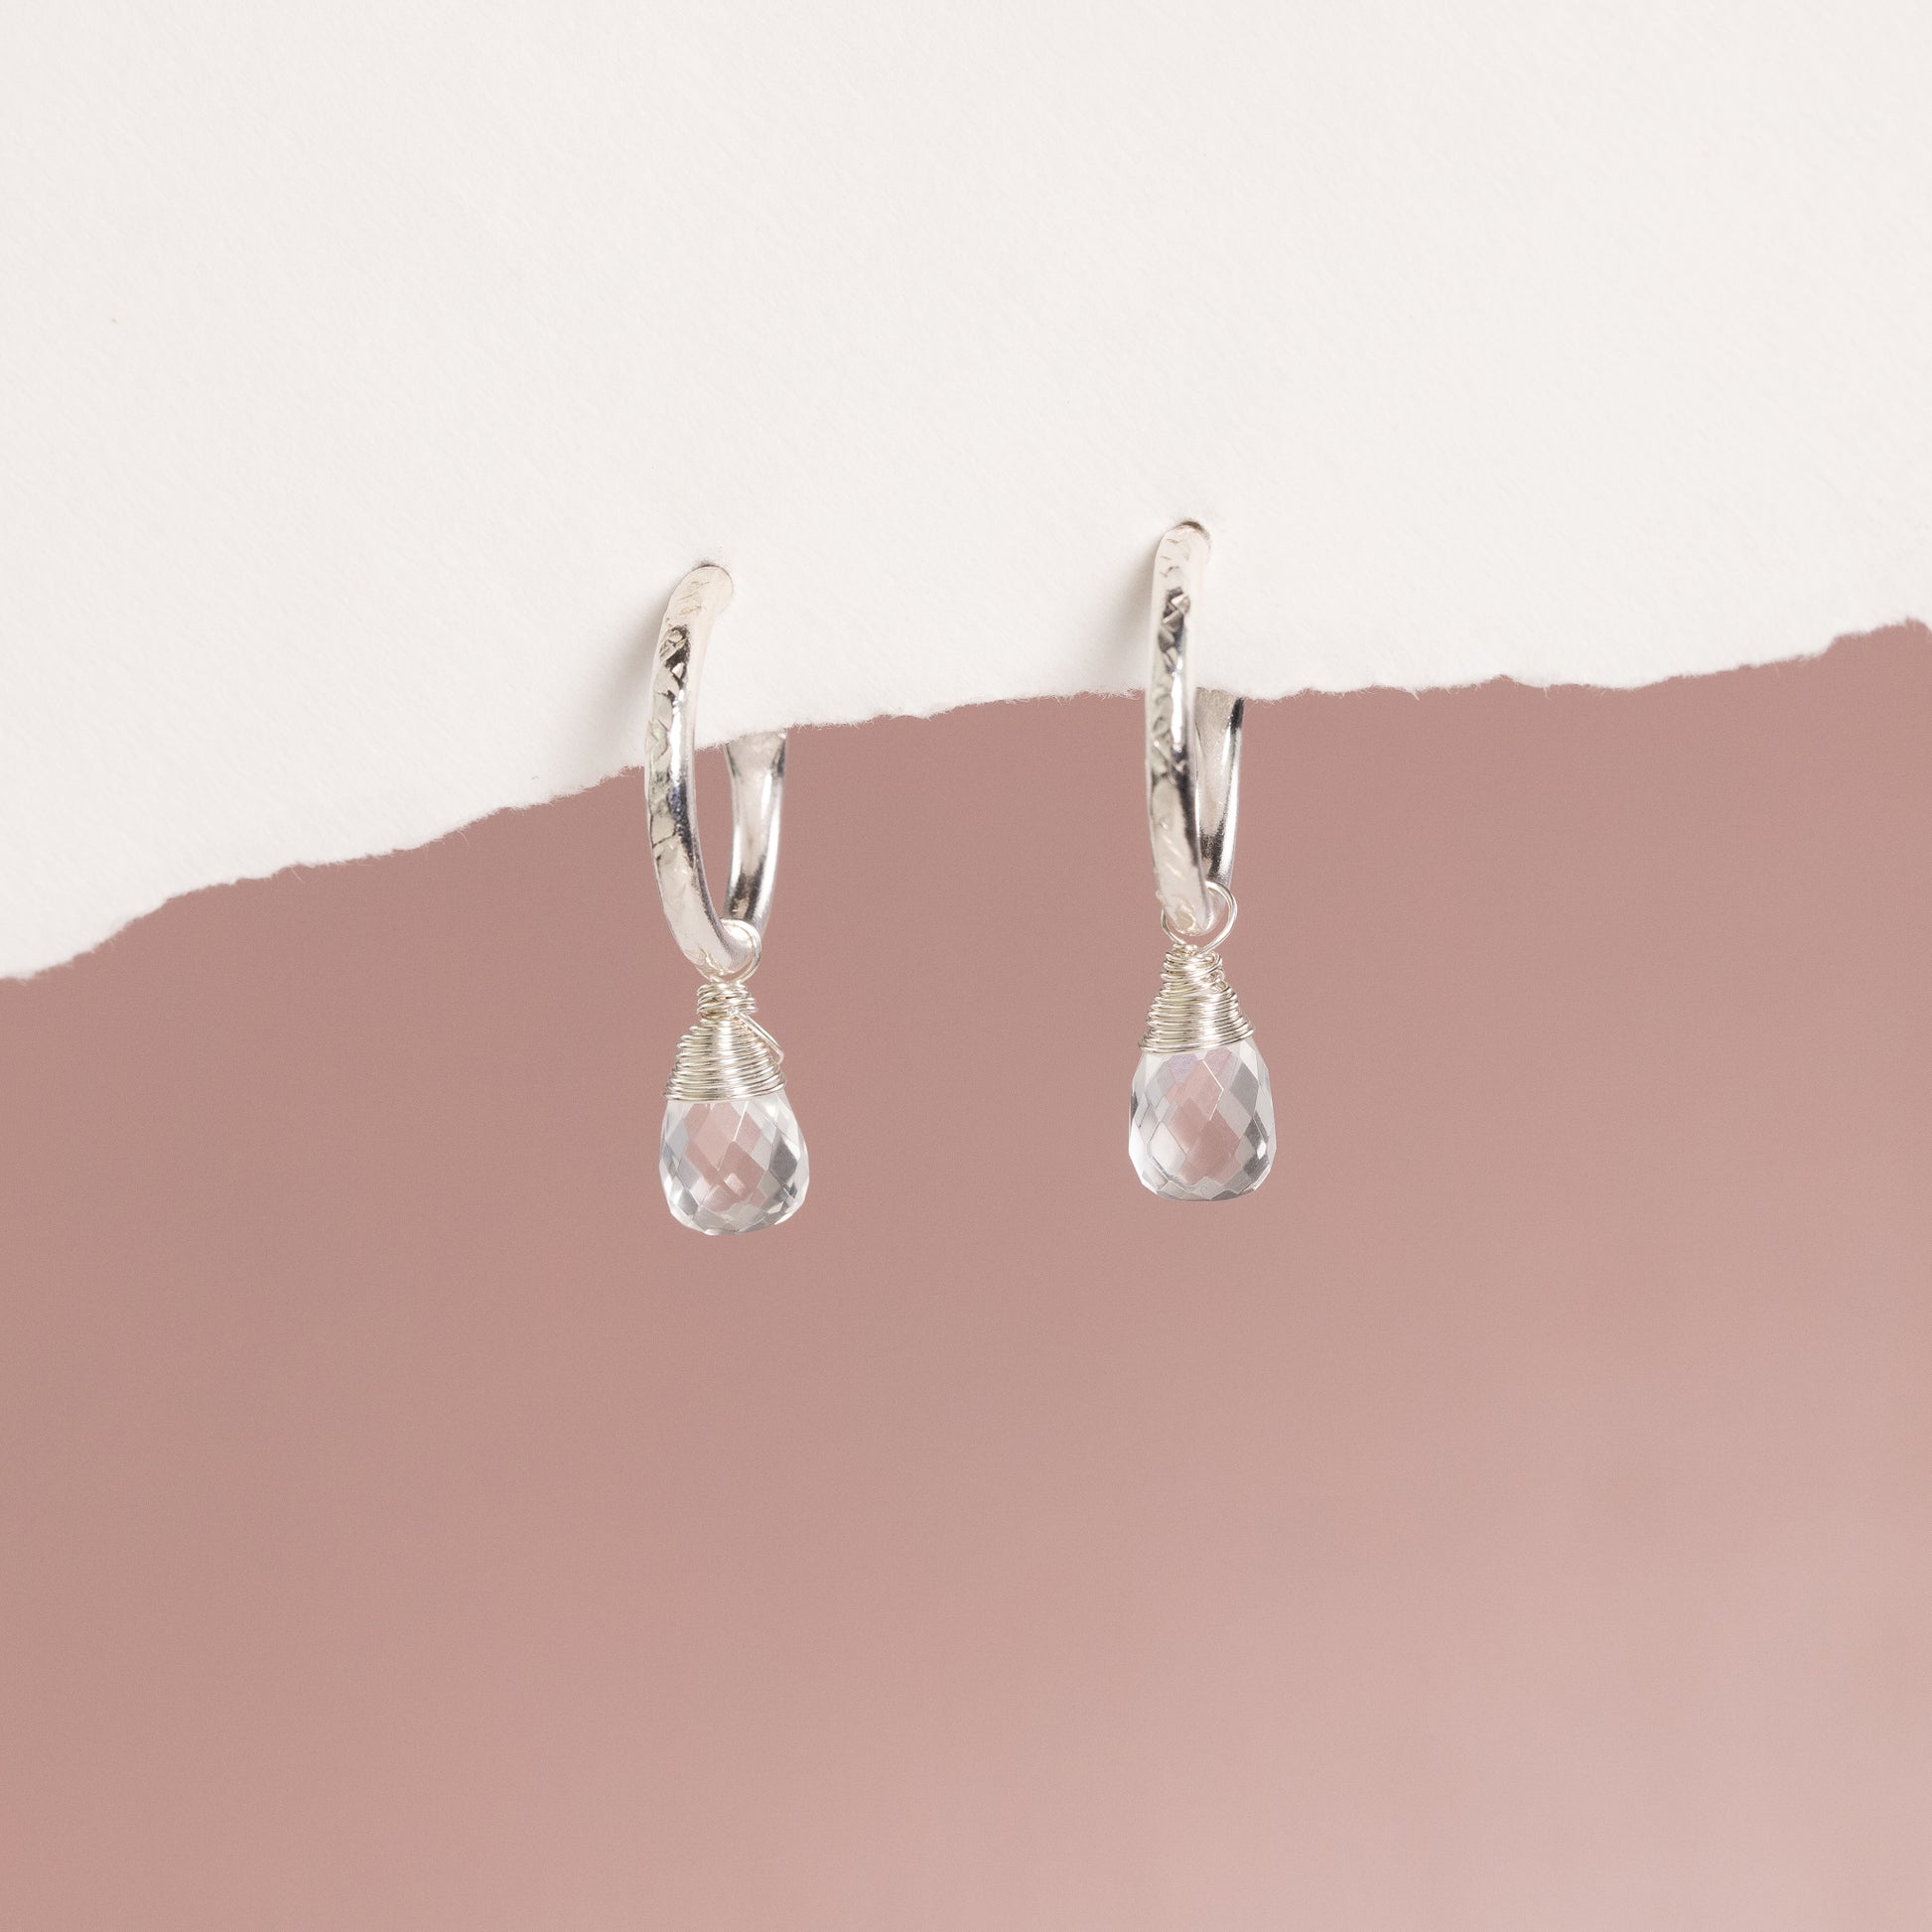 April Birthstone Earrings - Rock Crystal Silver Hoops - 1.5cm